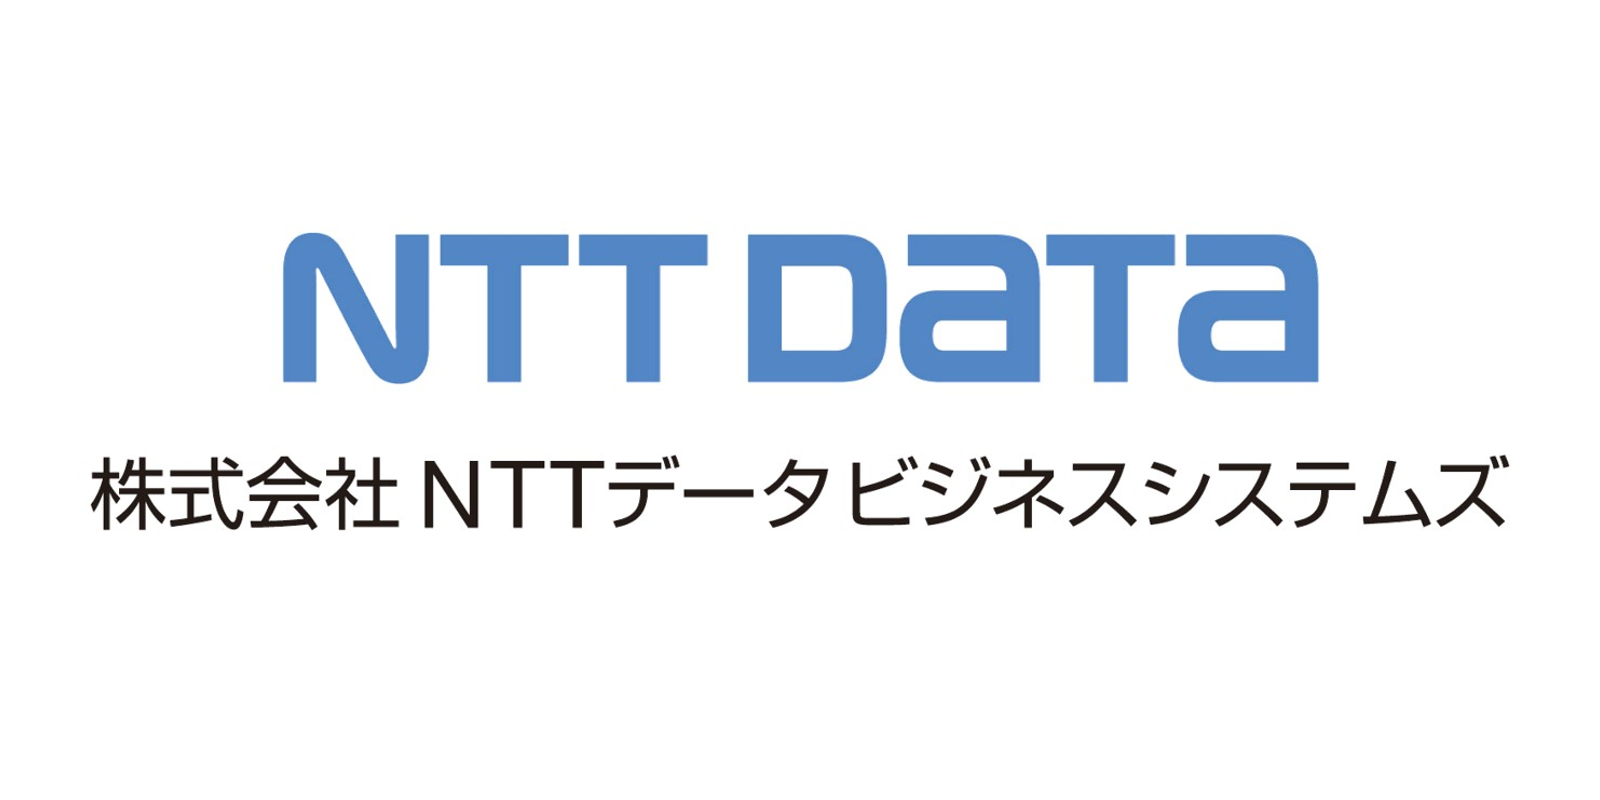 <h4 style="color: #fff;">株式会社NTTデータビジネスシステムズ様</h4>